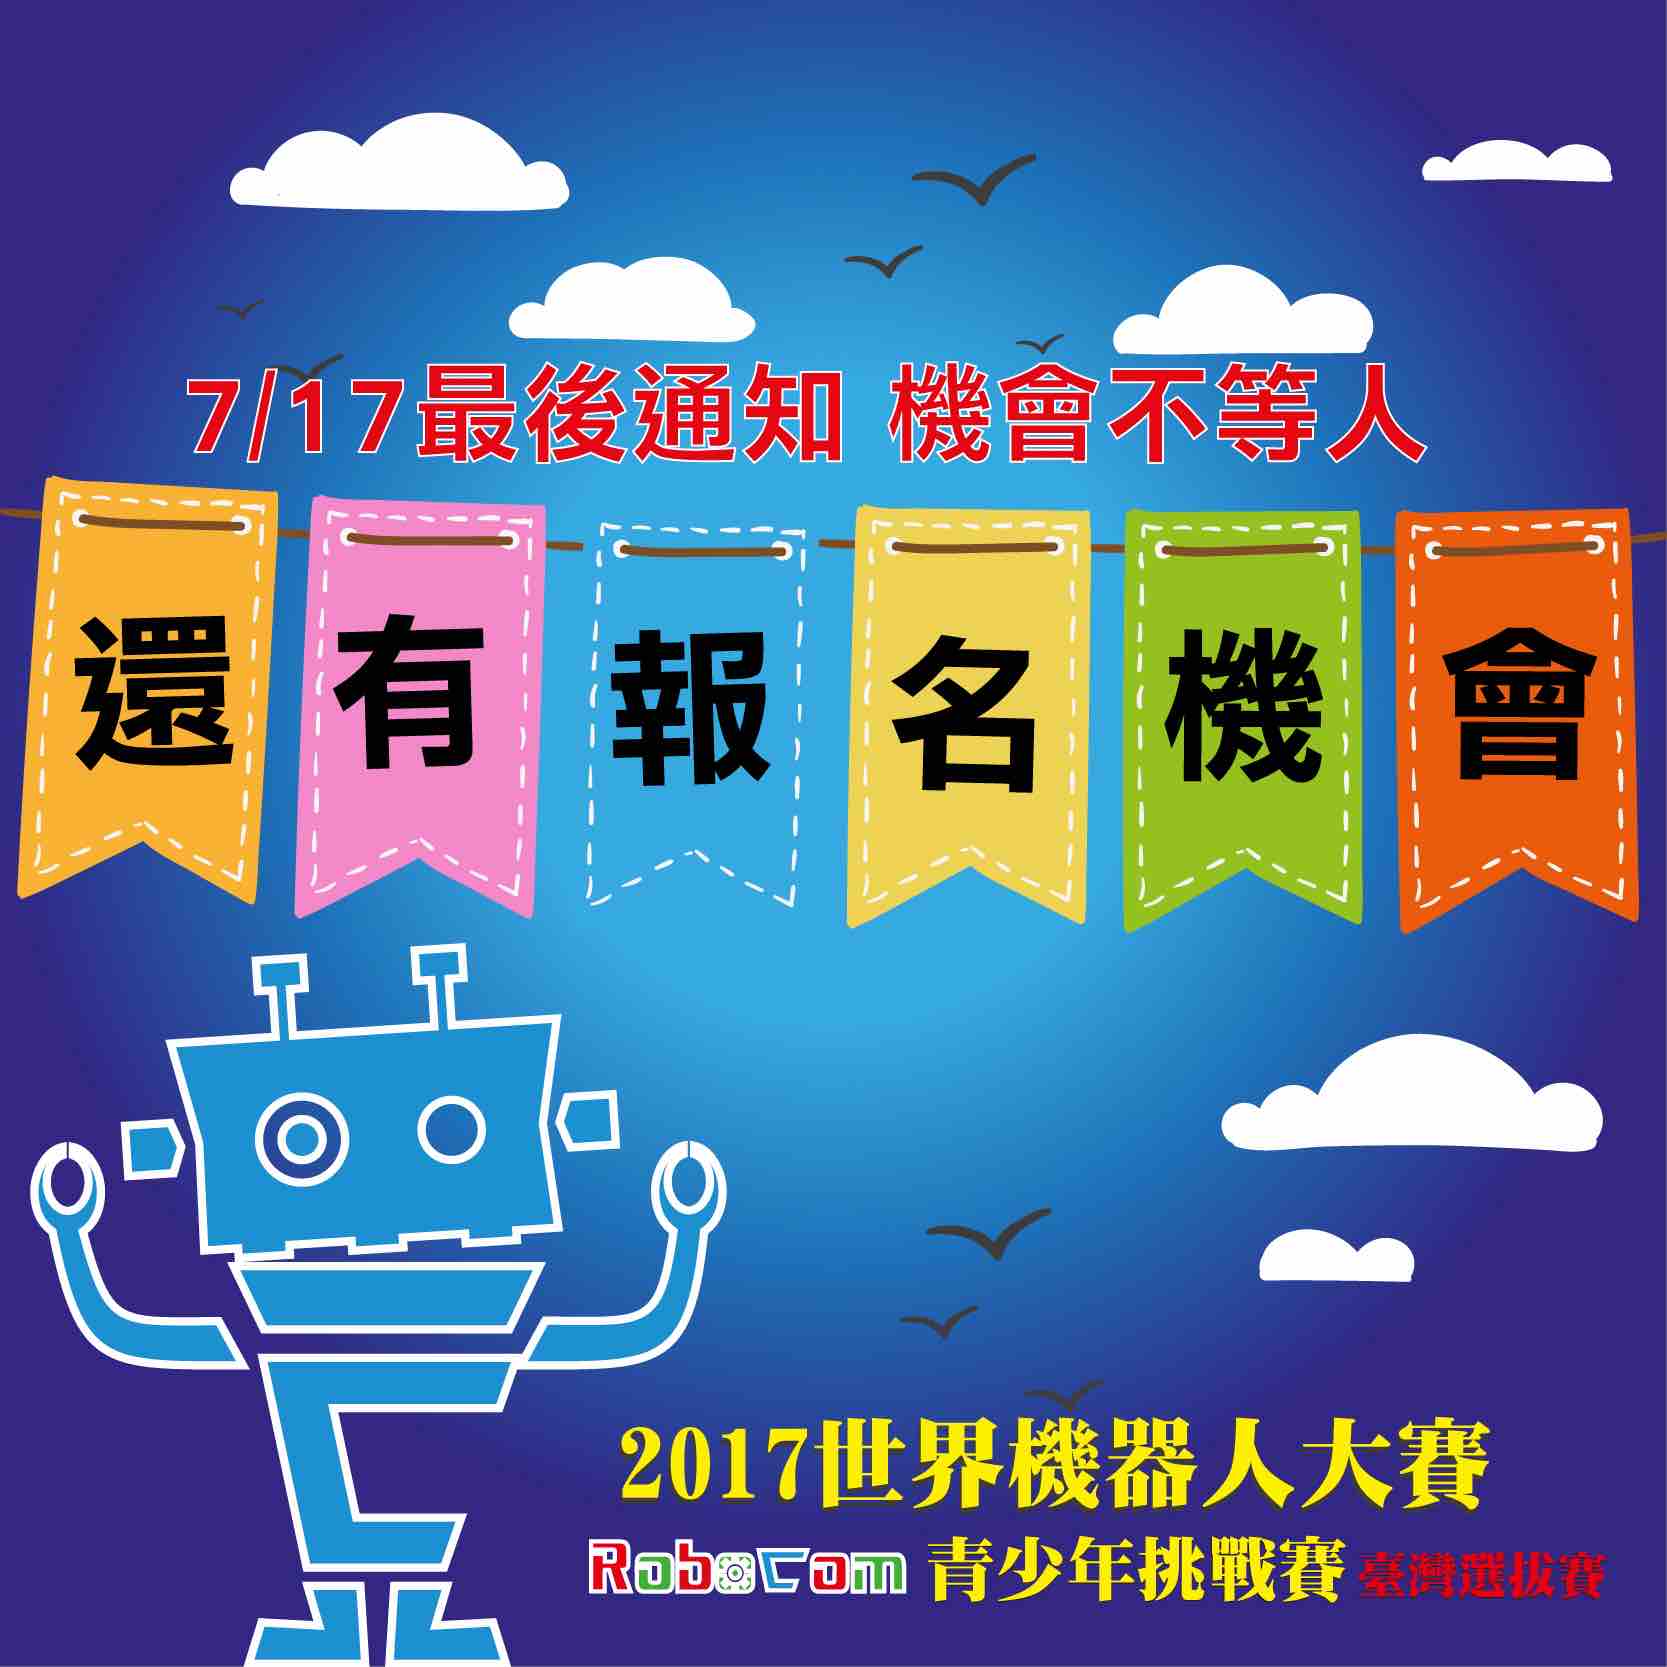 RoboCom世界機器人青少年挑戰賽之台灣選拔賽